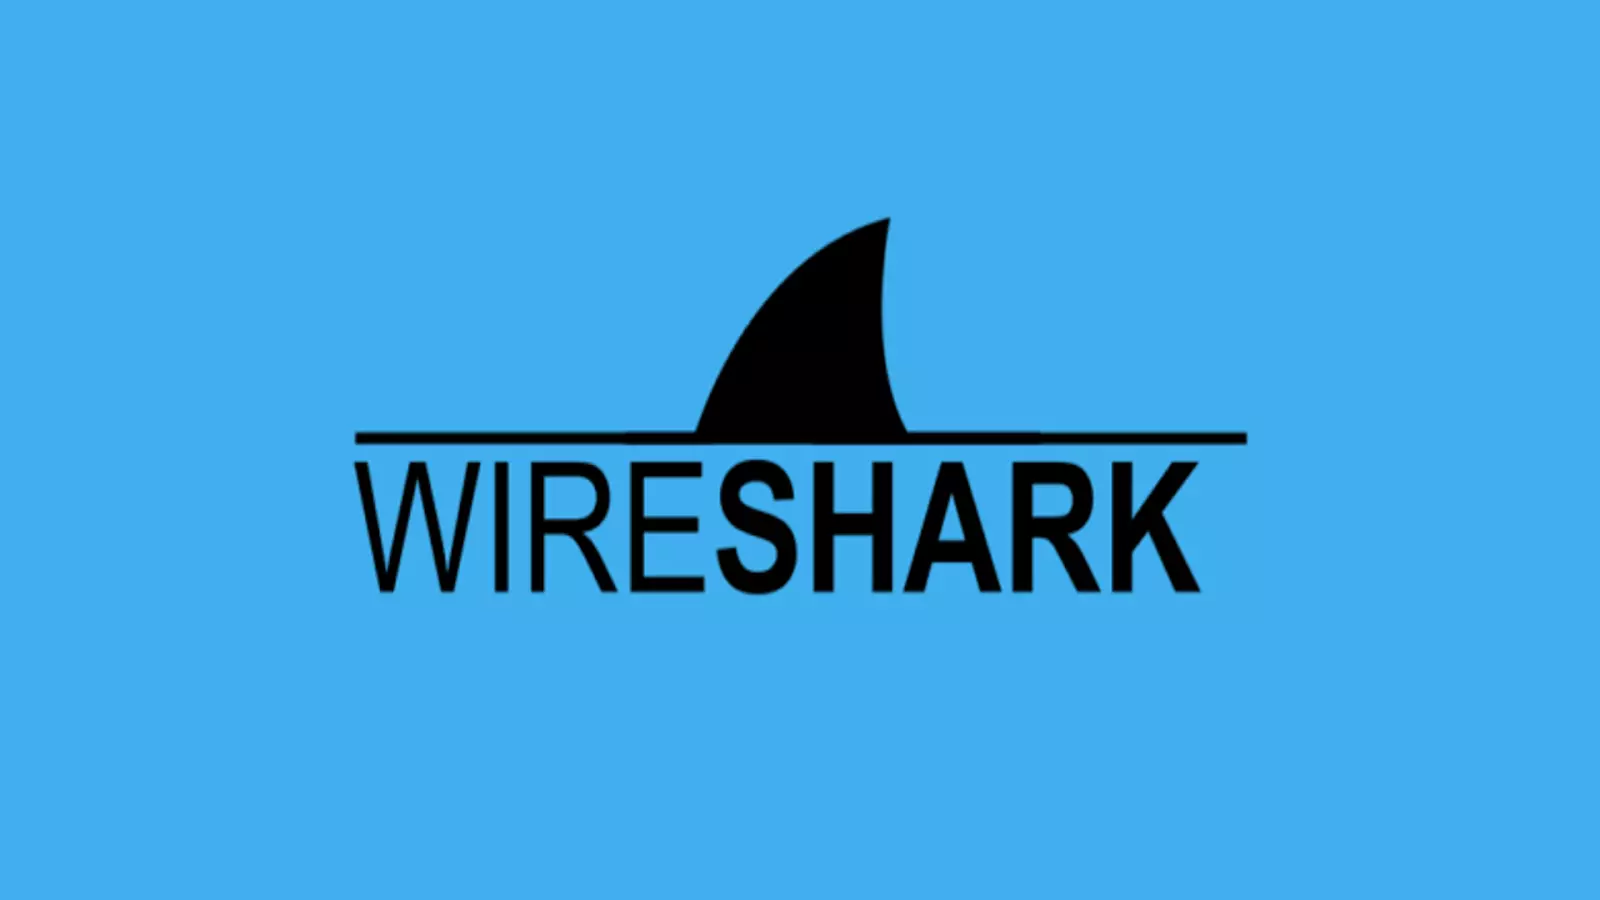 wireshark là gì